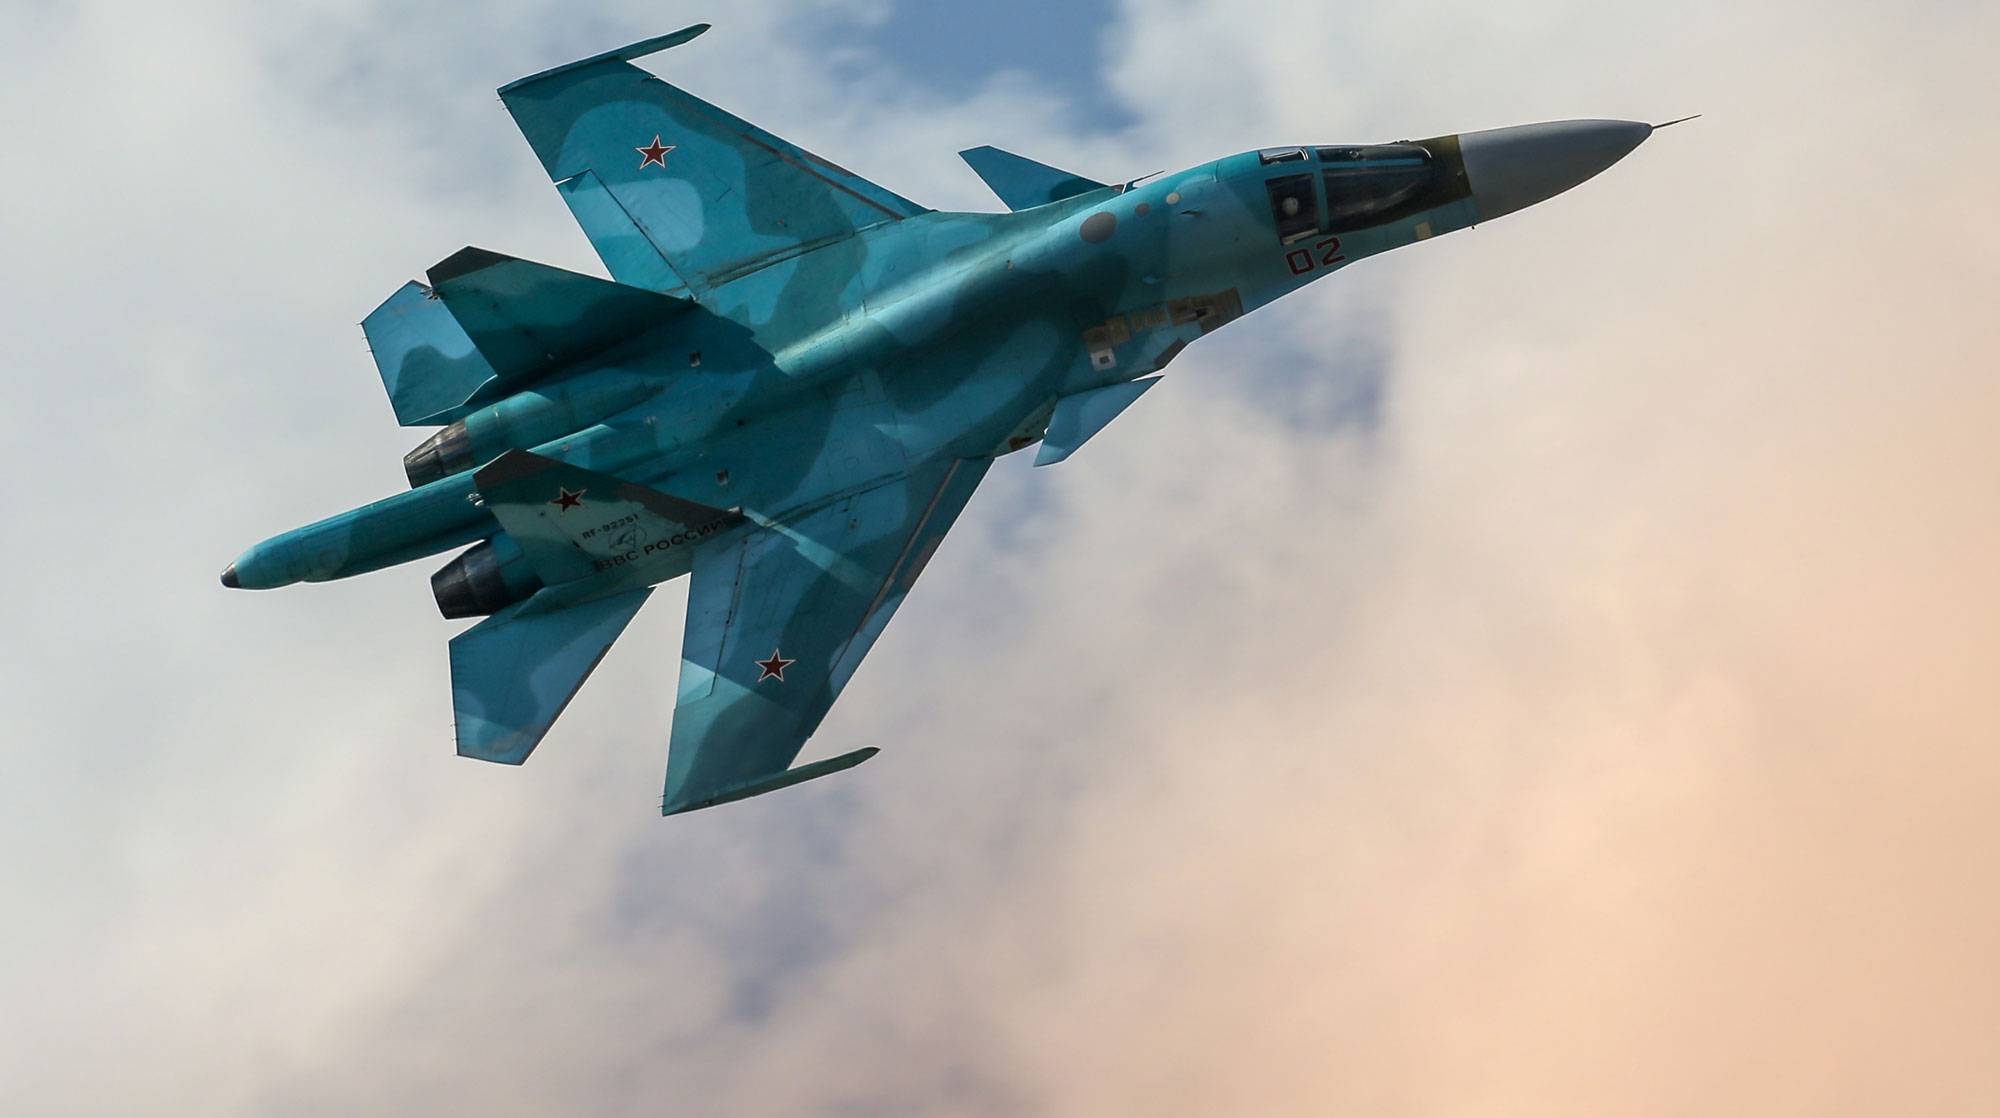 Dailystorm - Американцы обвинили российских пилотов Cу-27 в хаотичных маневрах